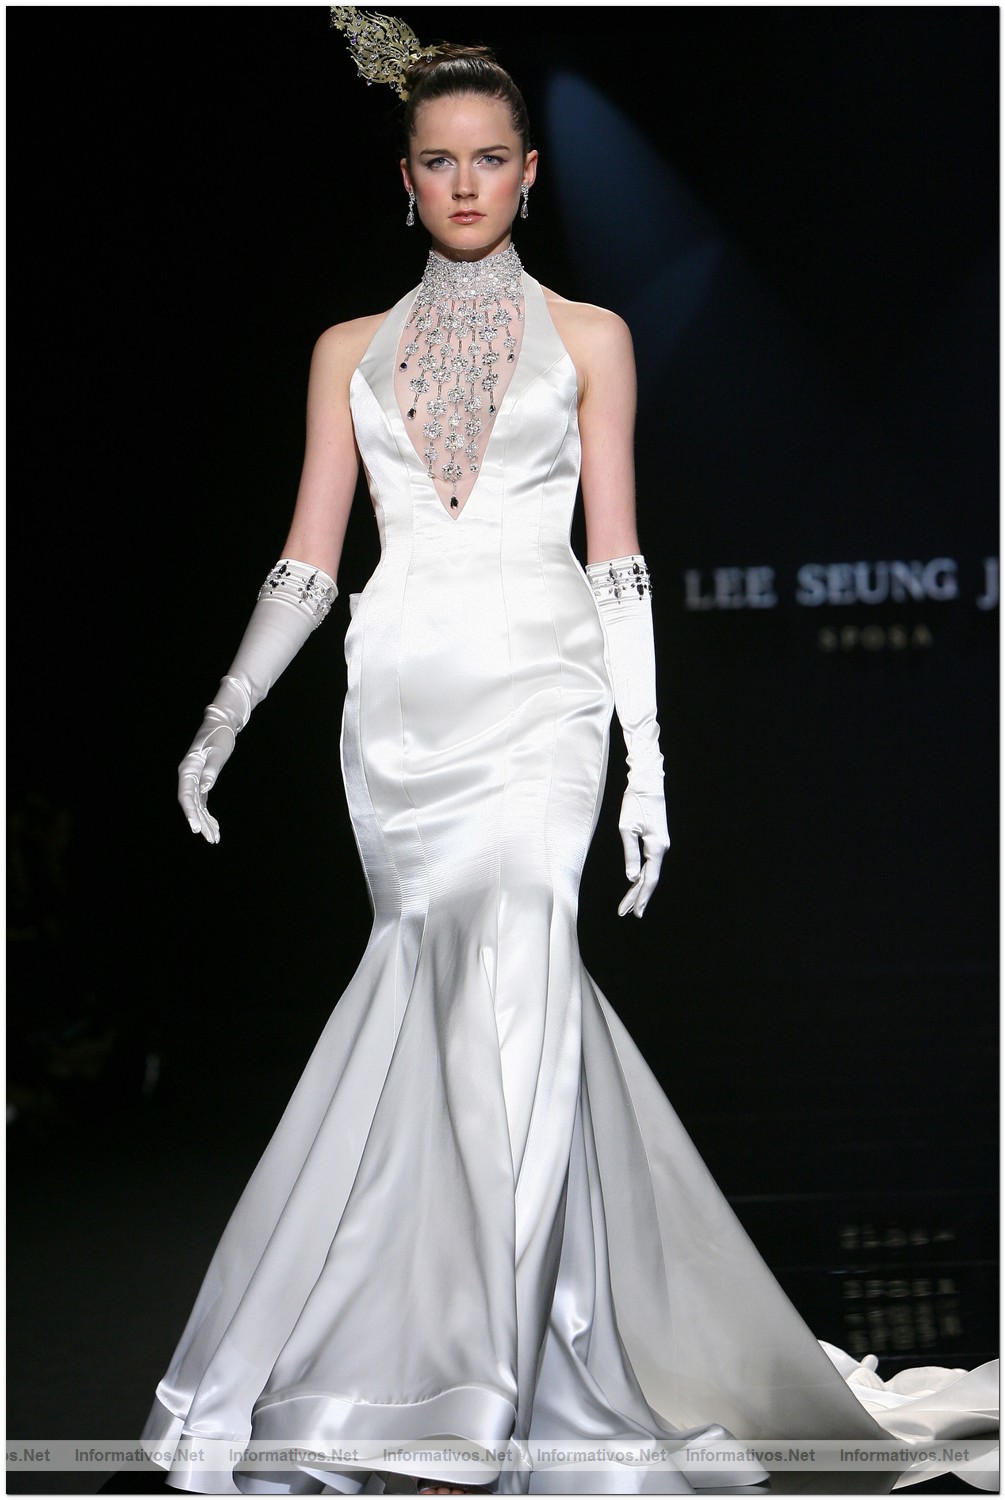 BCN20MAY010.- Barcelona Bridal Week - Pasarela Gaudi Novias: Lee Seung Jin 2011